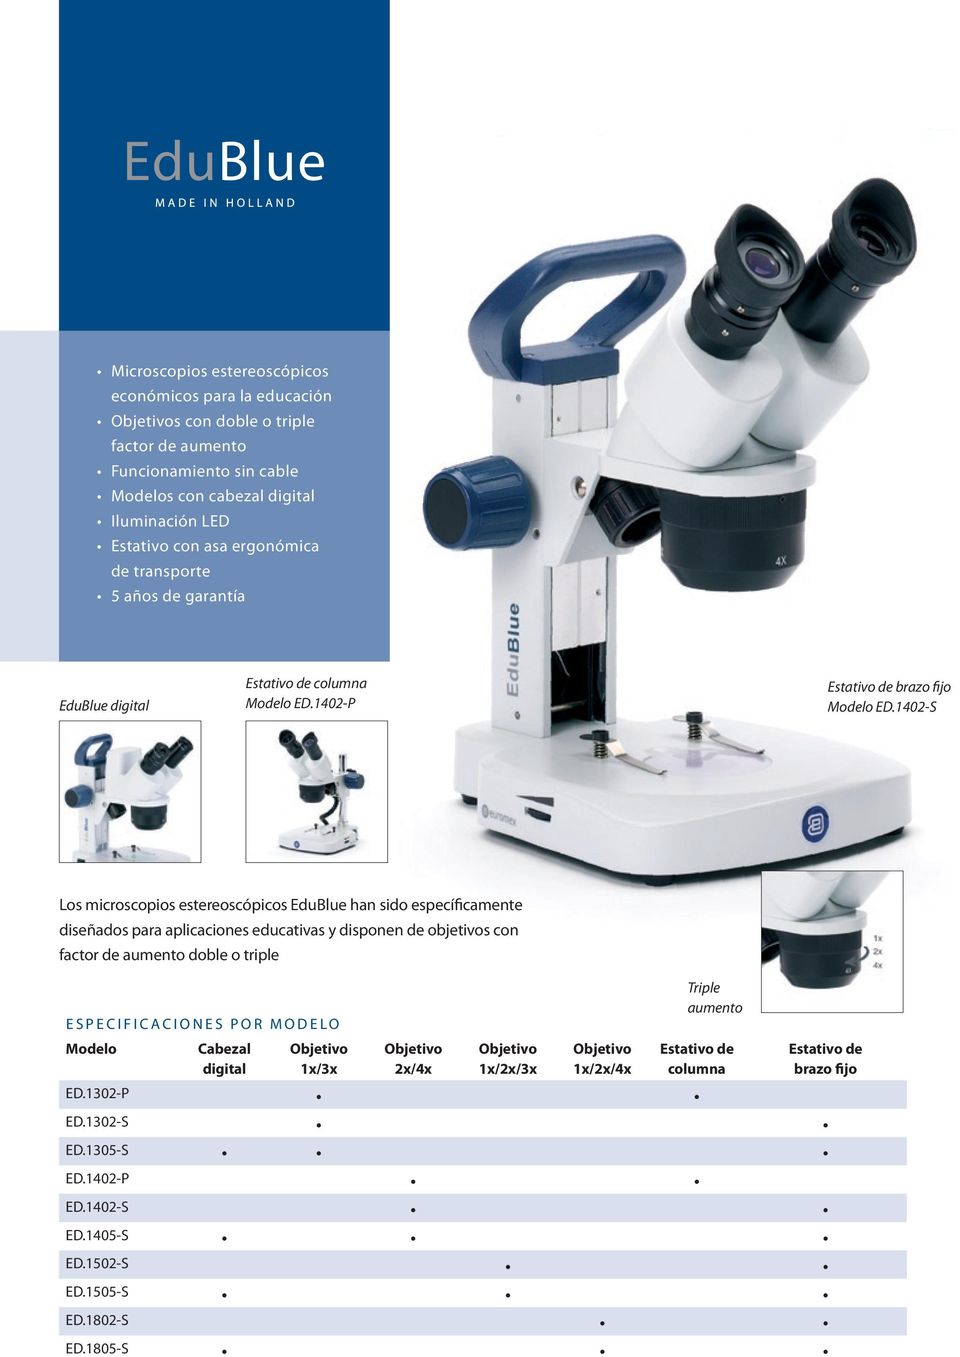 1402-S Los microscopios estereoscópicos EduBlue han sido específicamente diseñados para aplicaciones educativas y disponen de objetivos con factor de aumento doble o triple